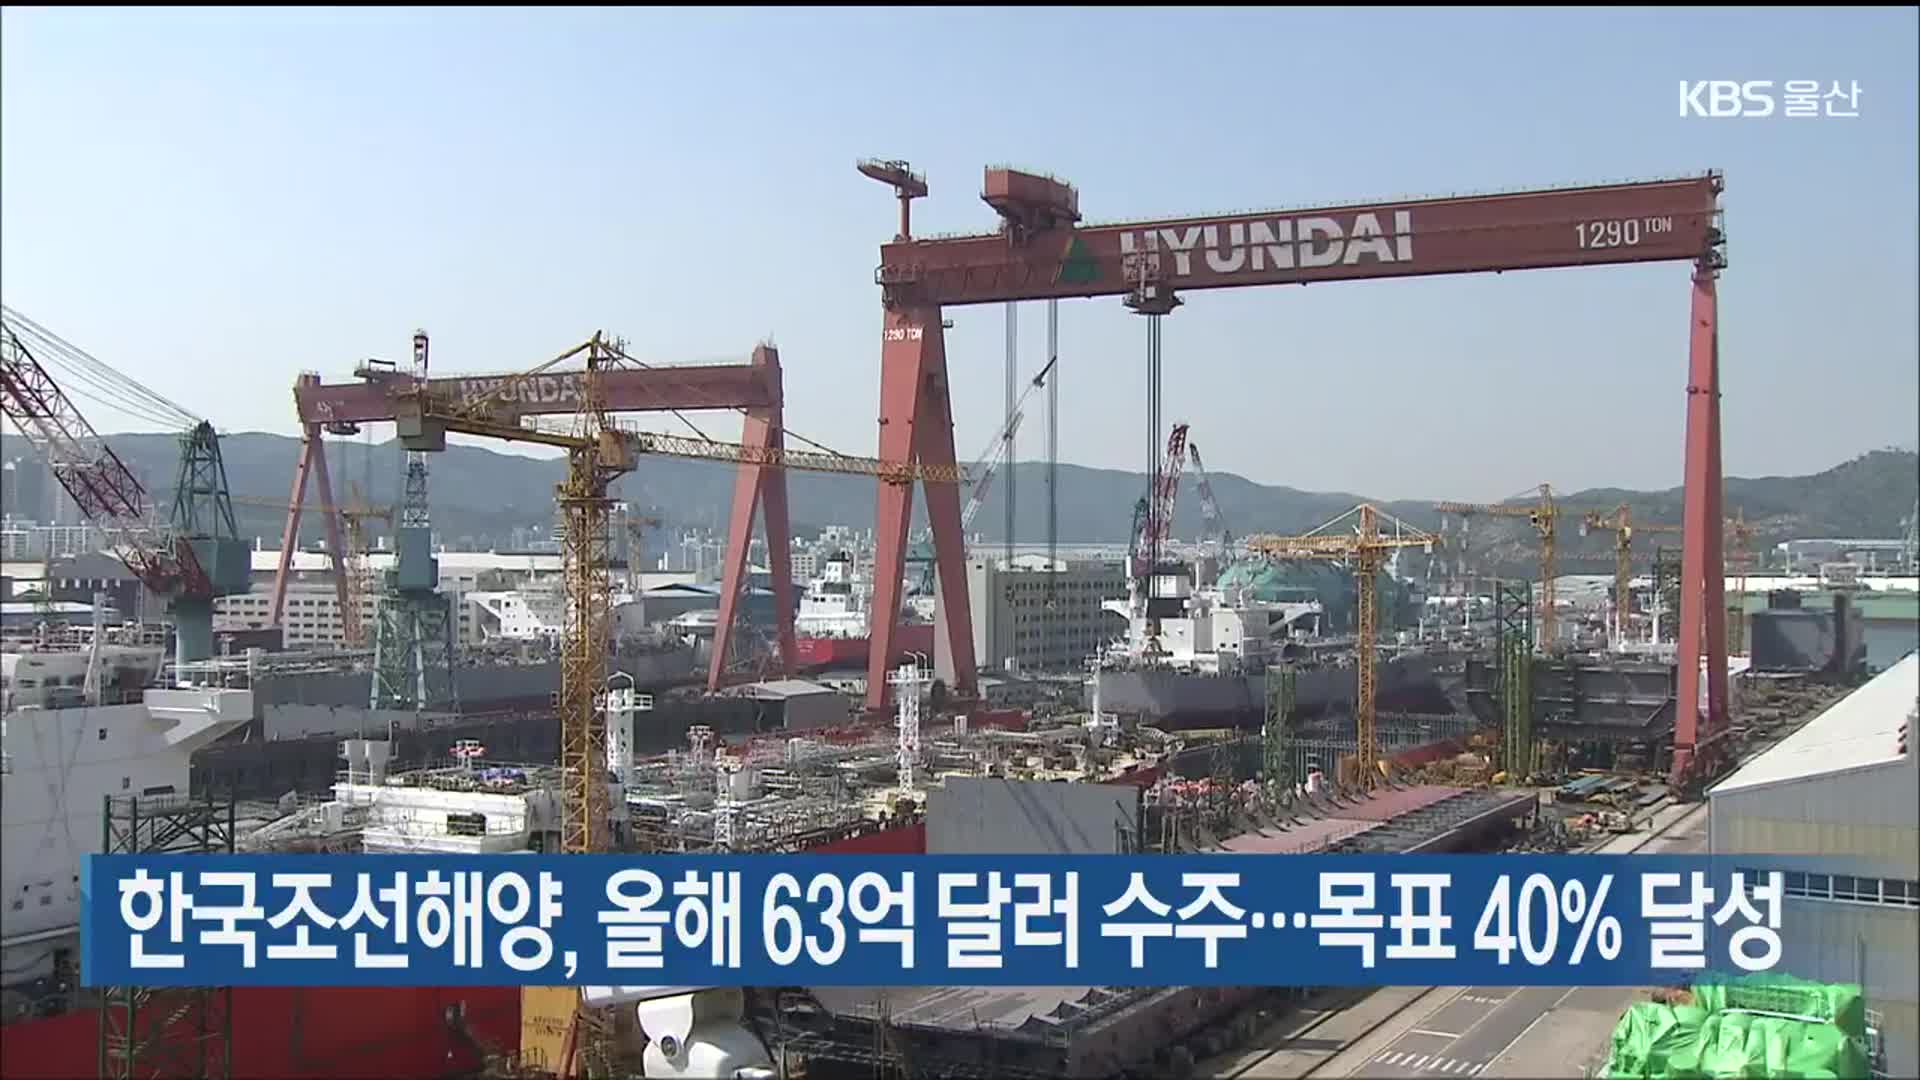 한국조선해양, 올해 63억 달러 수주…목표 40% 달성